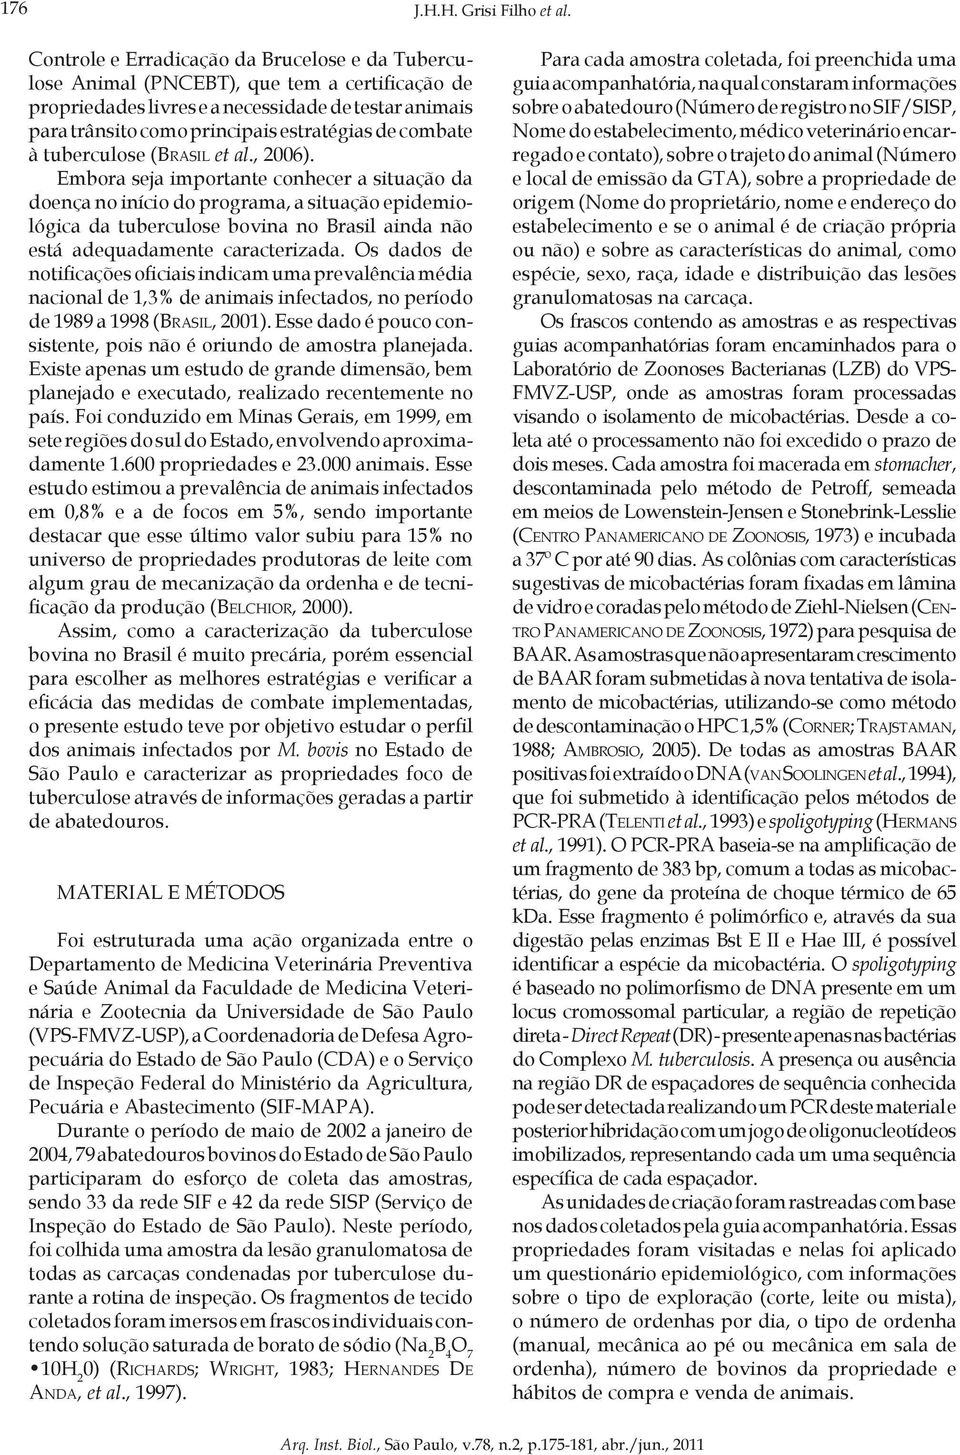 combate à tuberculose (Brasil et al., 2006).